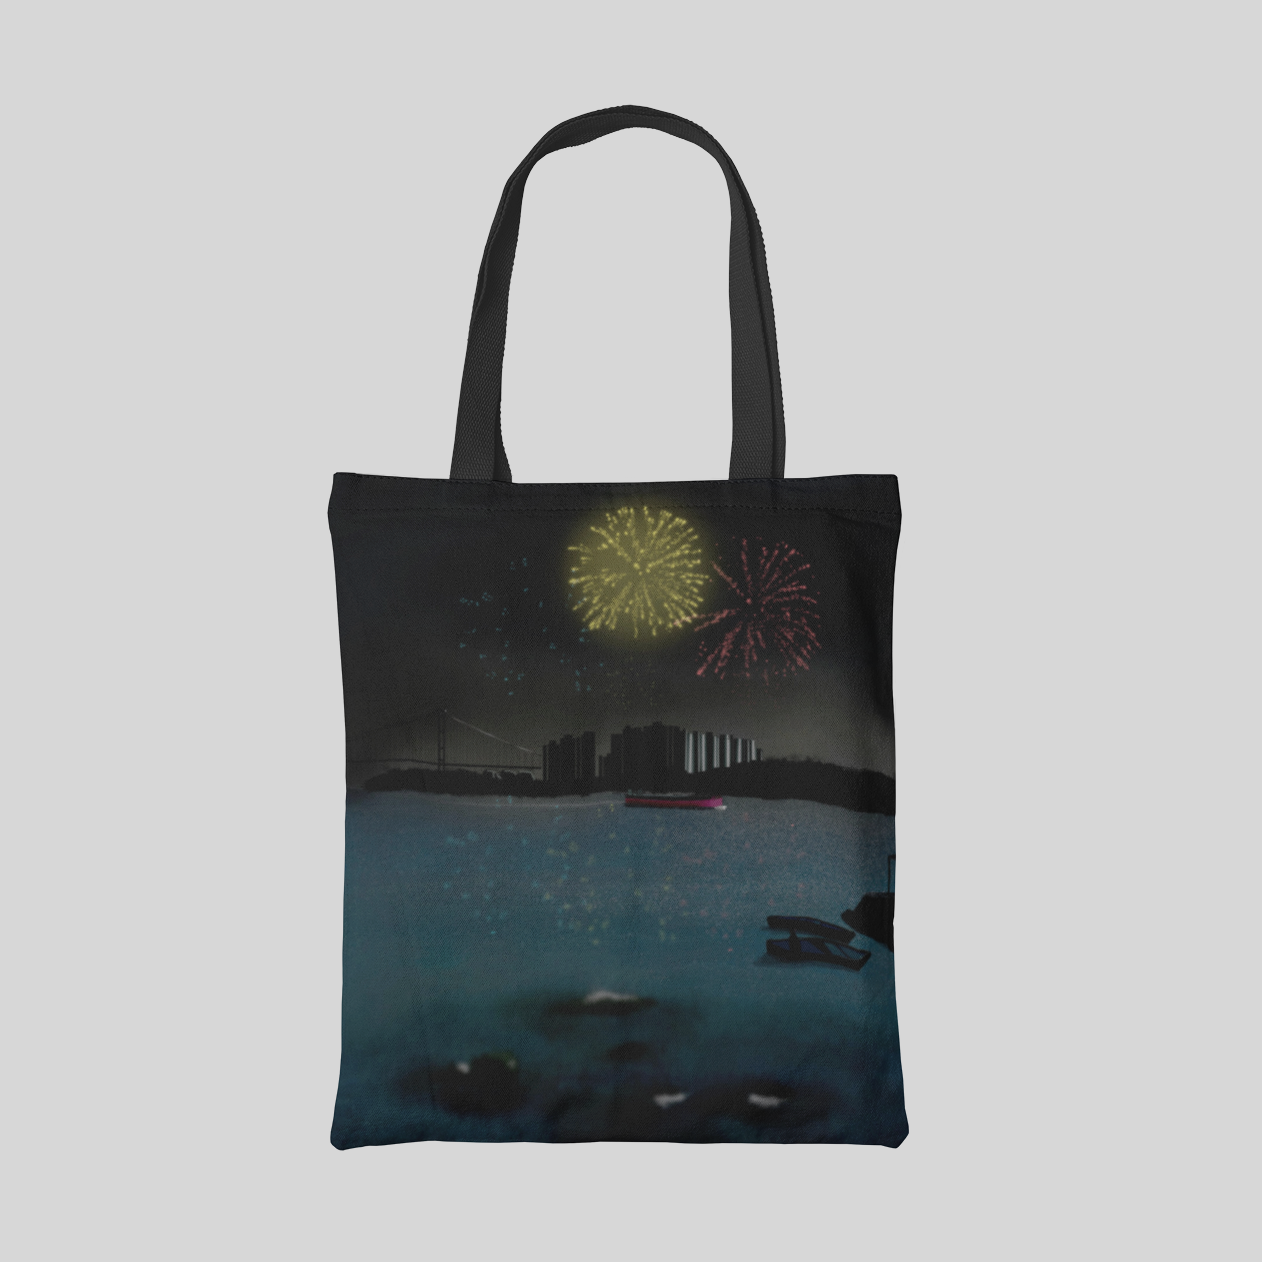 Tote bag with HK harbour landscape and fireworks illustration